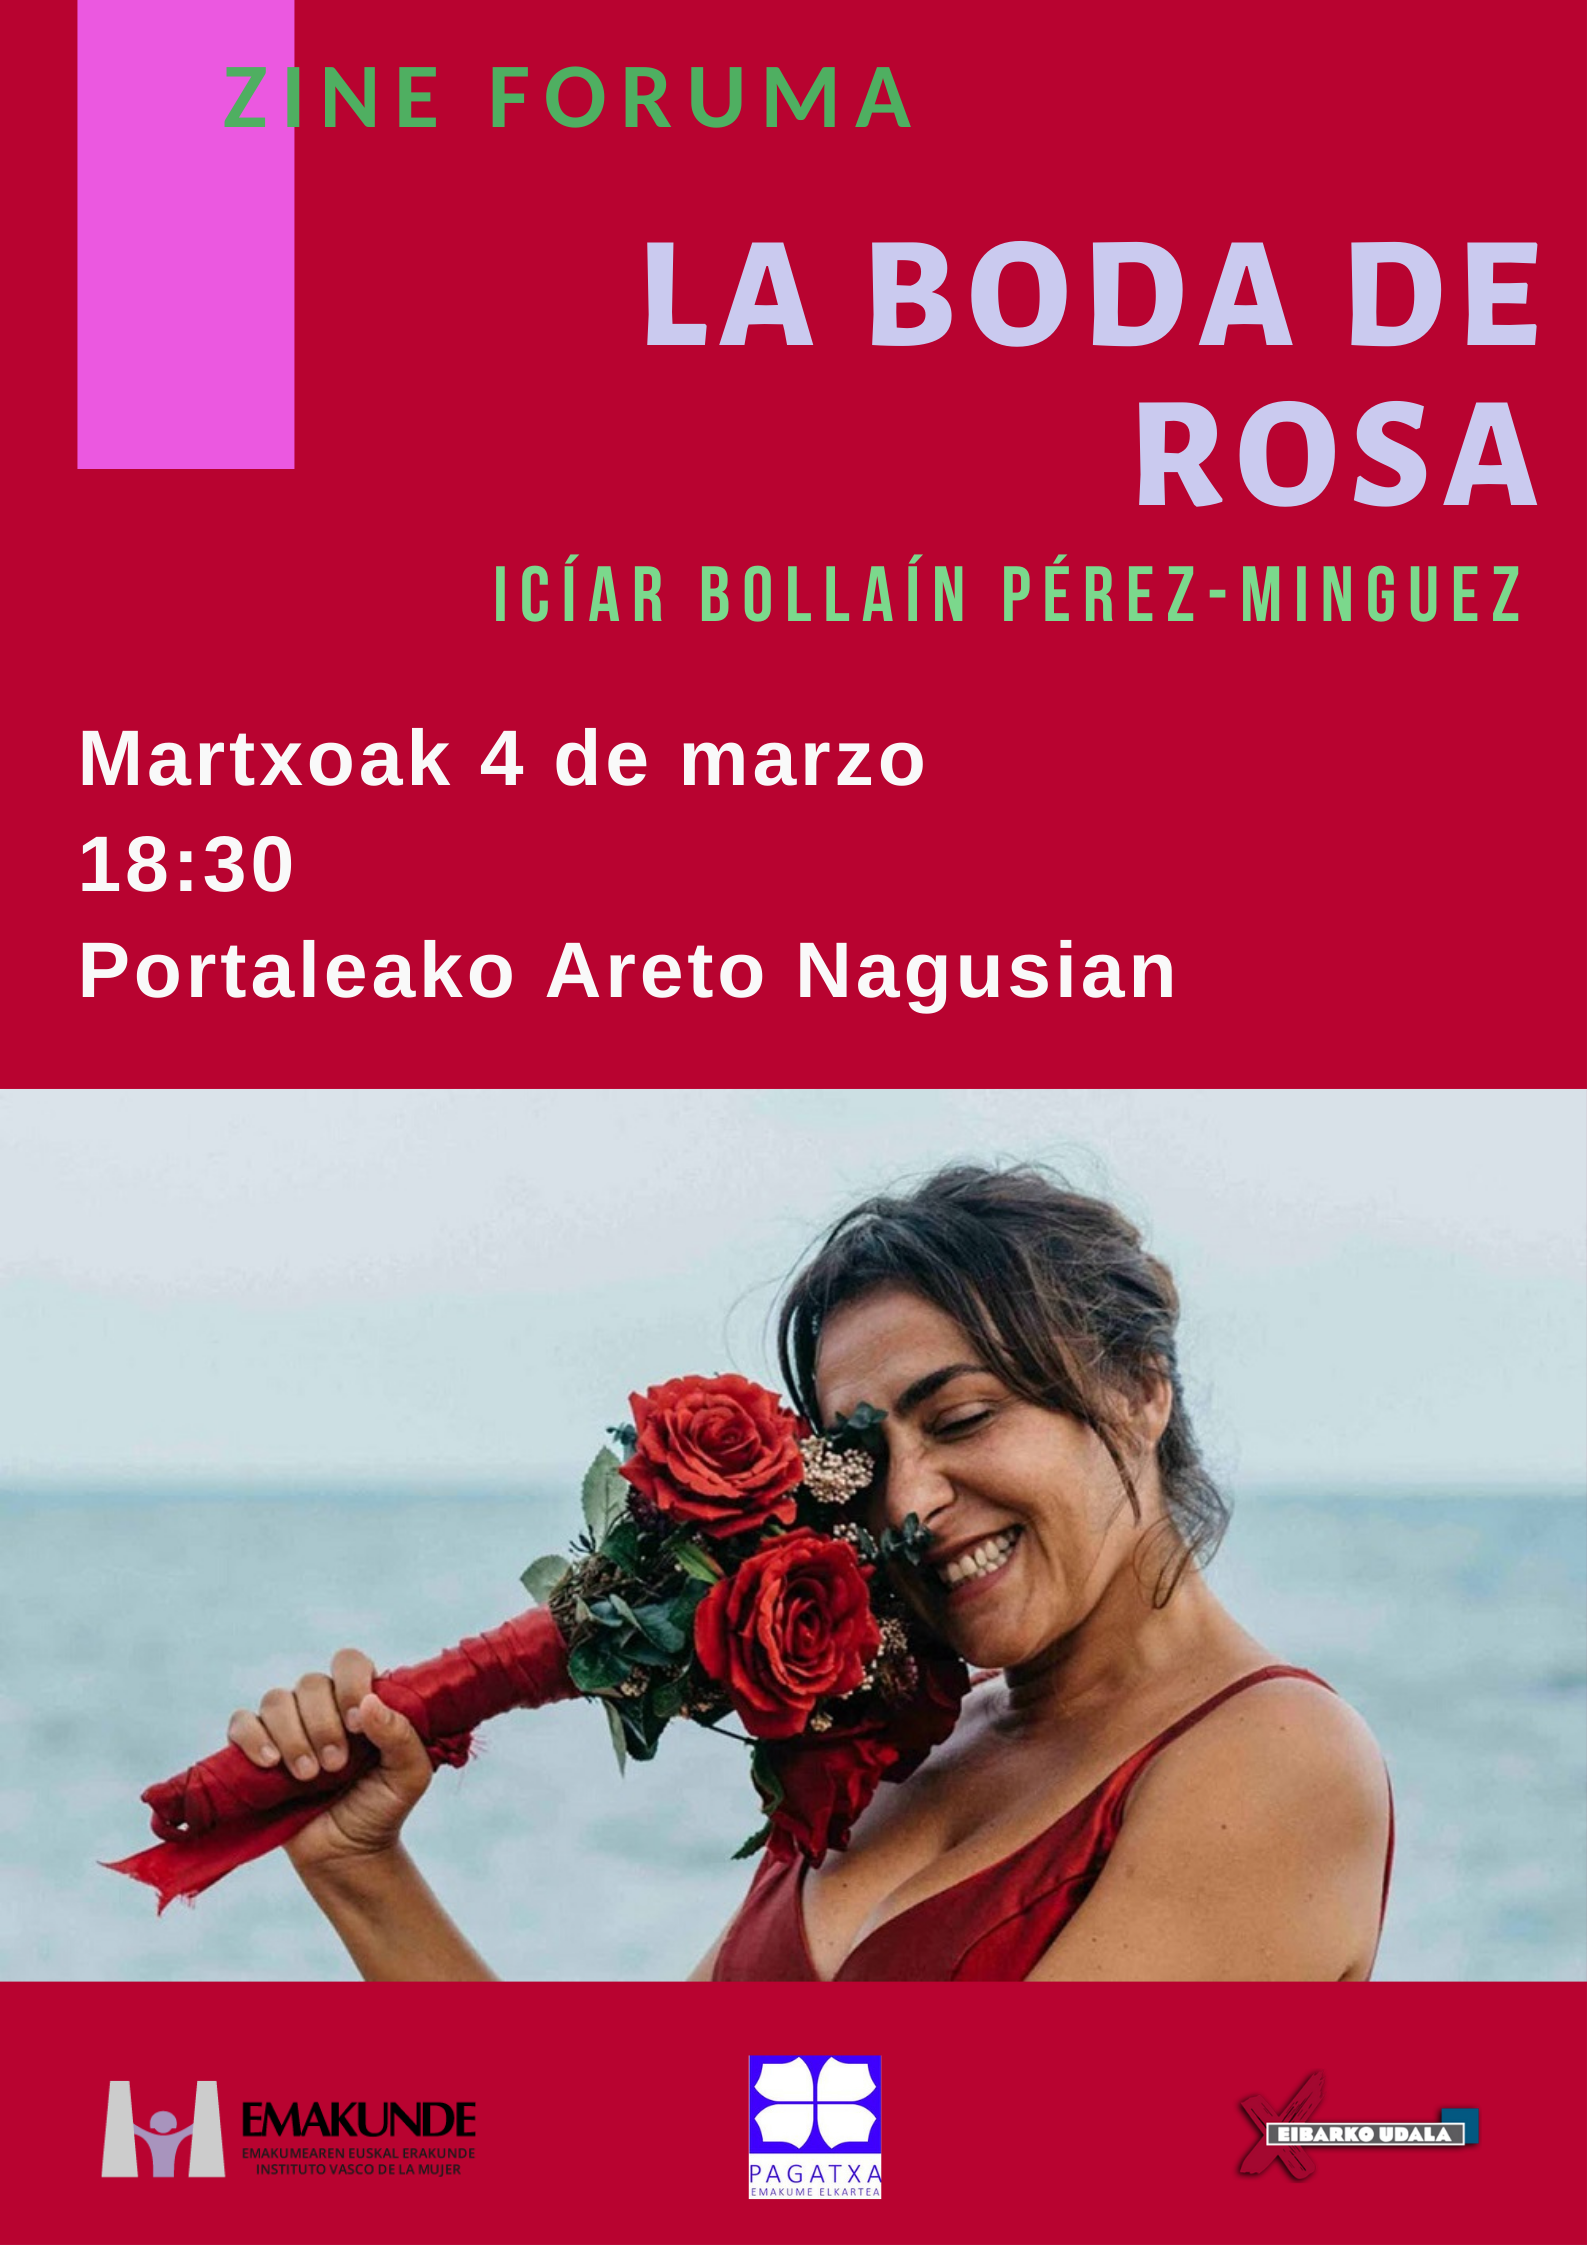 Cine Forum: La boda de Rosa